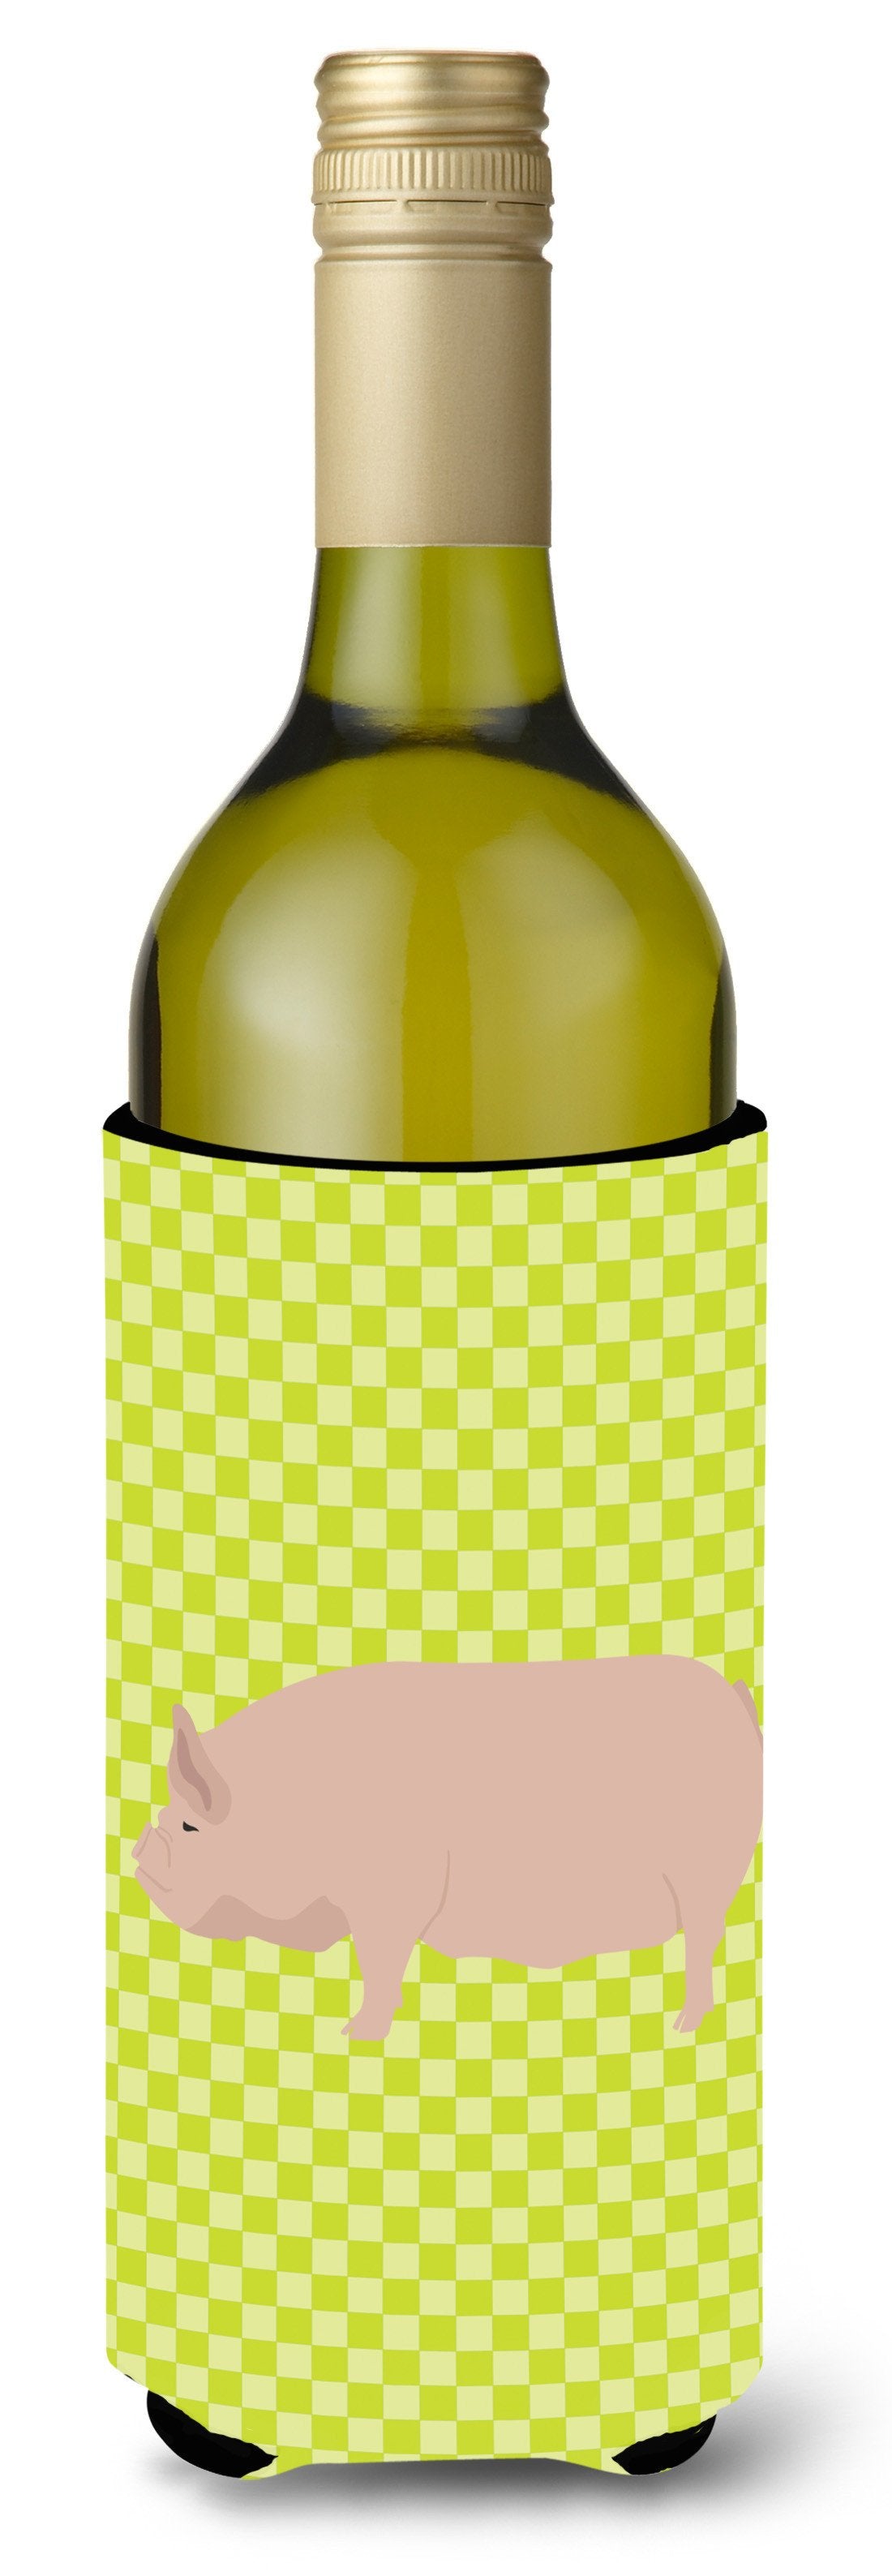 Welsh Pig Green Wine Bottle Beverge Insulator Hugger BB7763LITERK by Caroline's Treasures